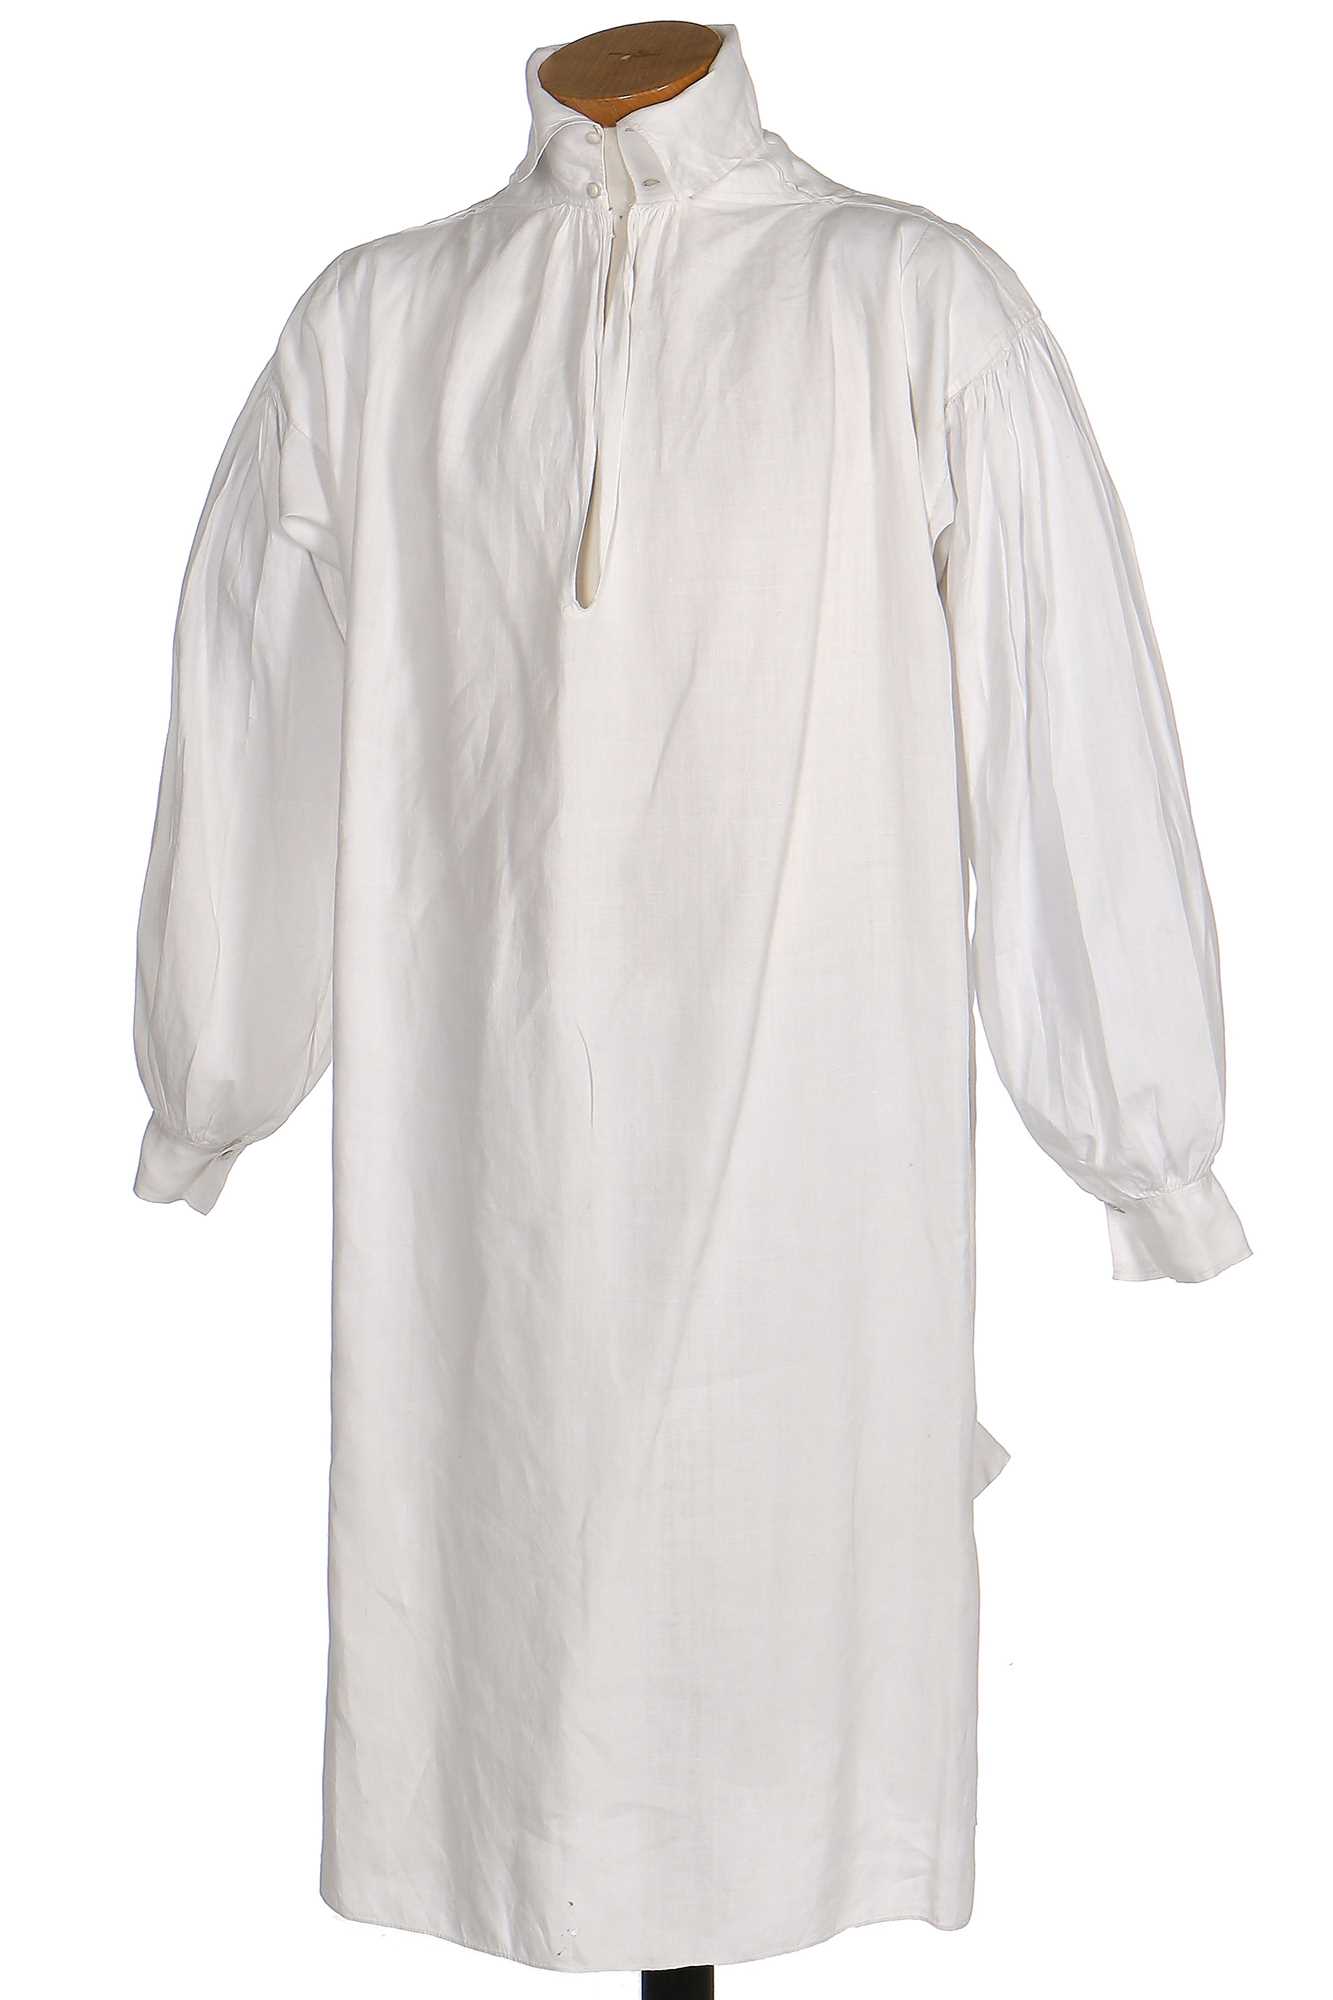 Lot 41 - A fine gentleman's linen shirt, circa 1810,